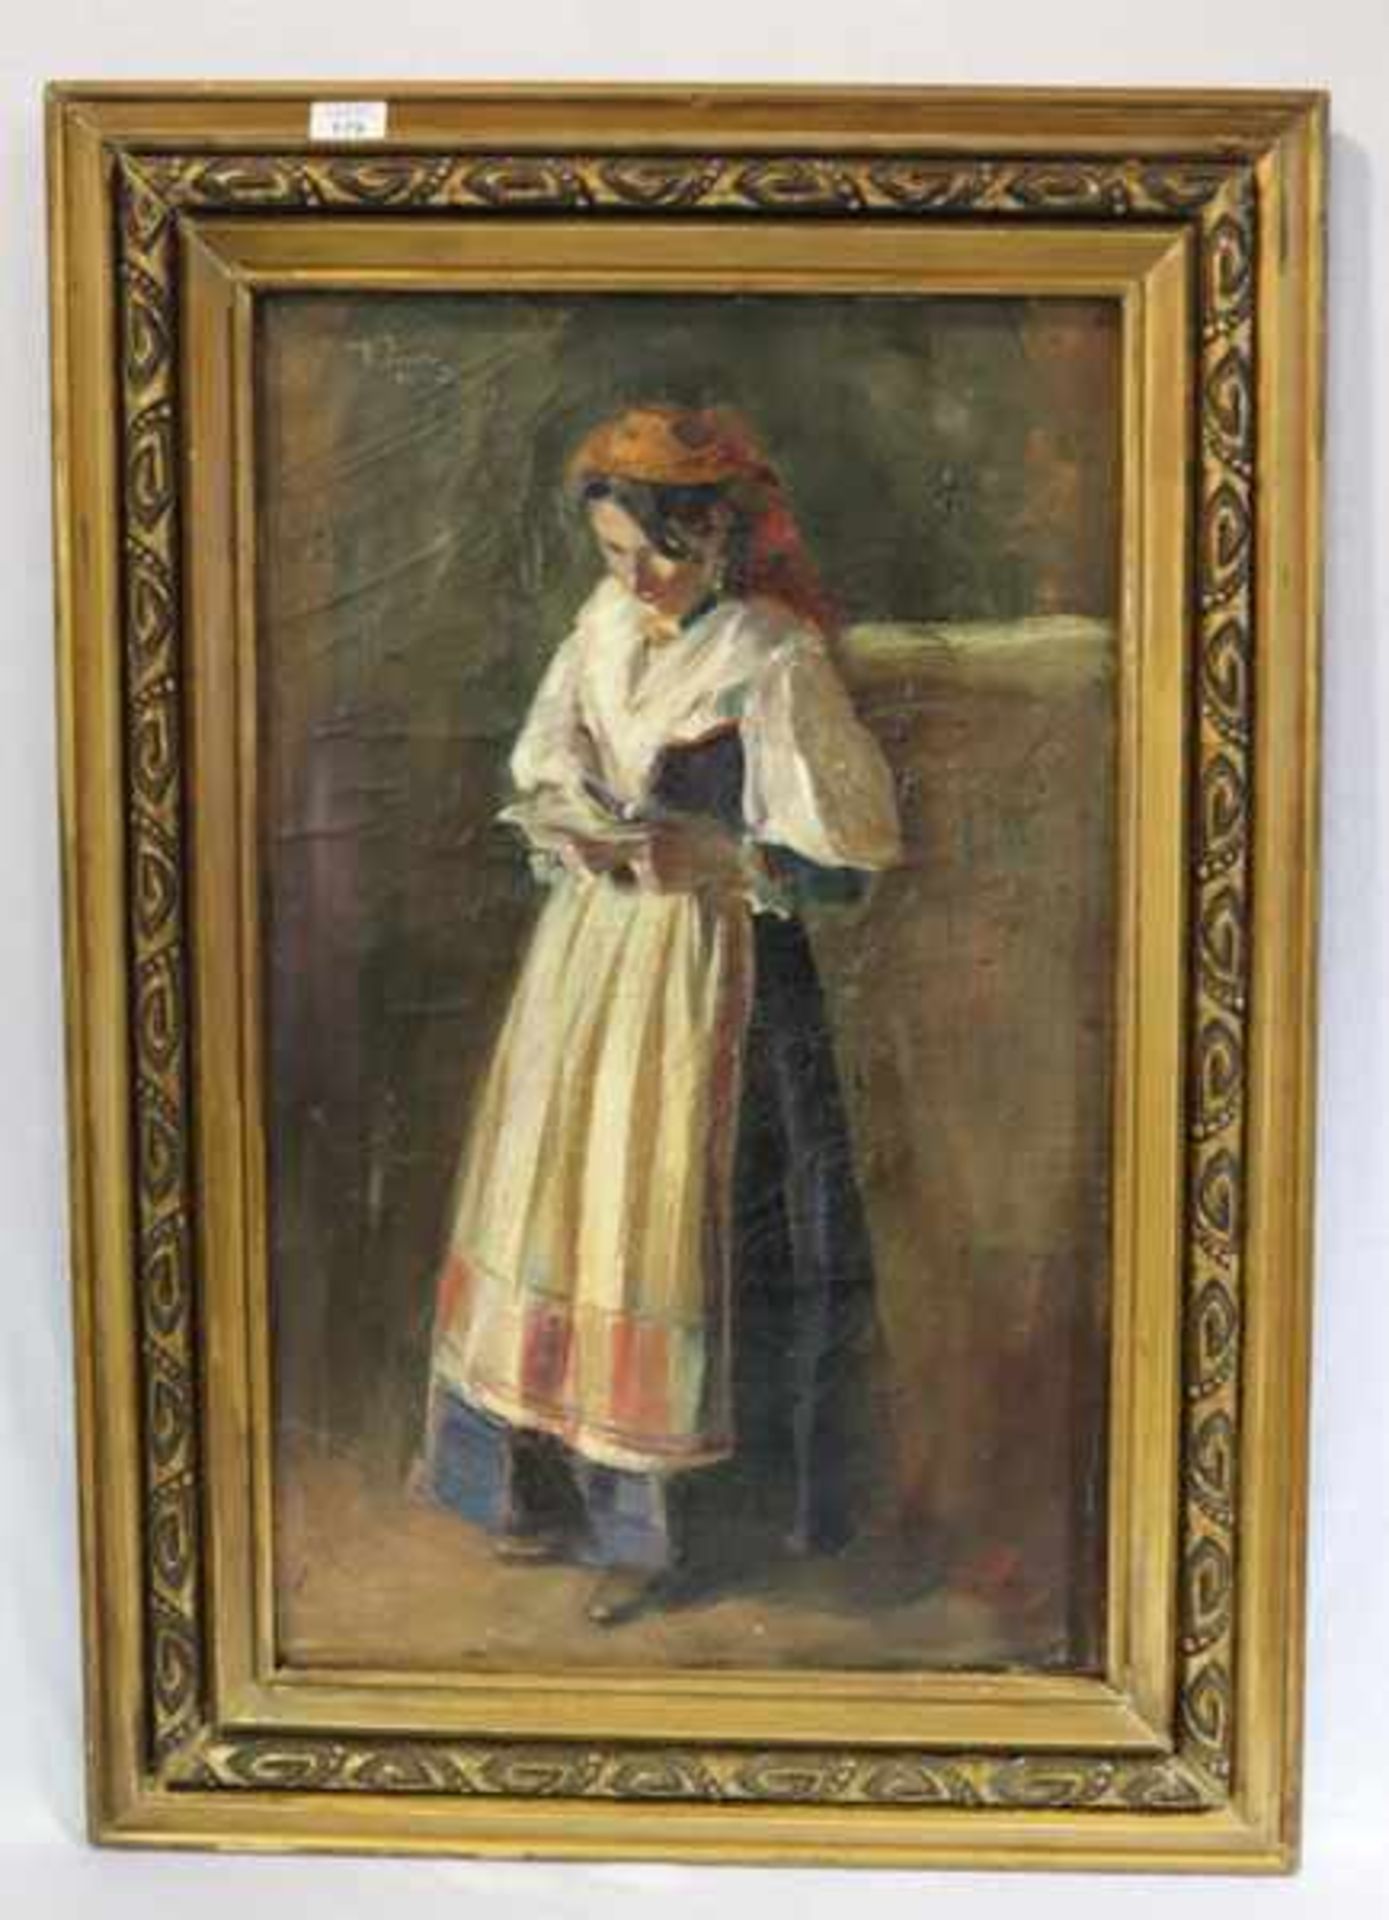 Gemälde ÖL/LW 'Frau in Tracht mit Buch', undeutlich signiert, 19. Jahrhundert, kleinere